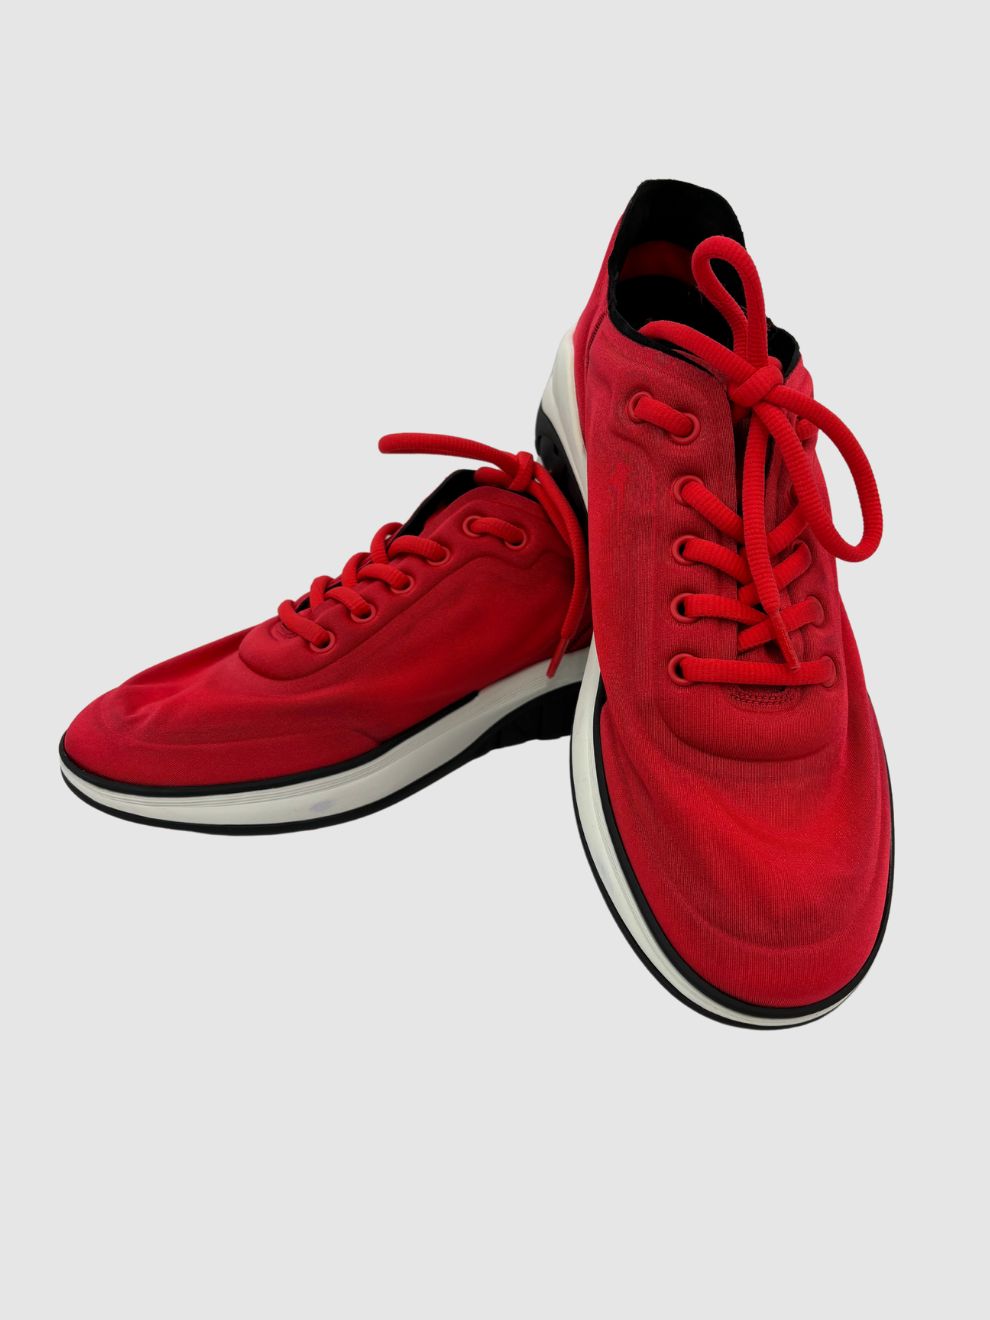 Rote glänzende Sneakers von Chanel mit Logo CC